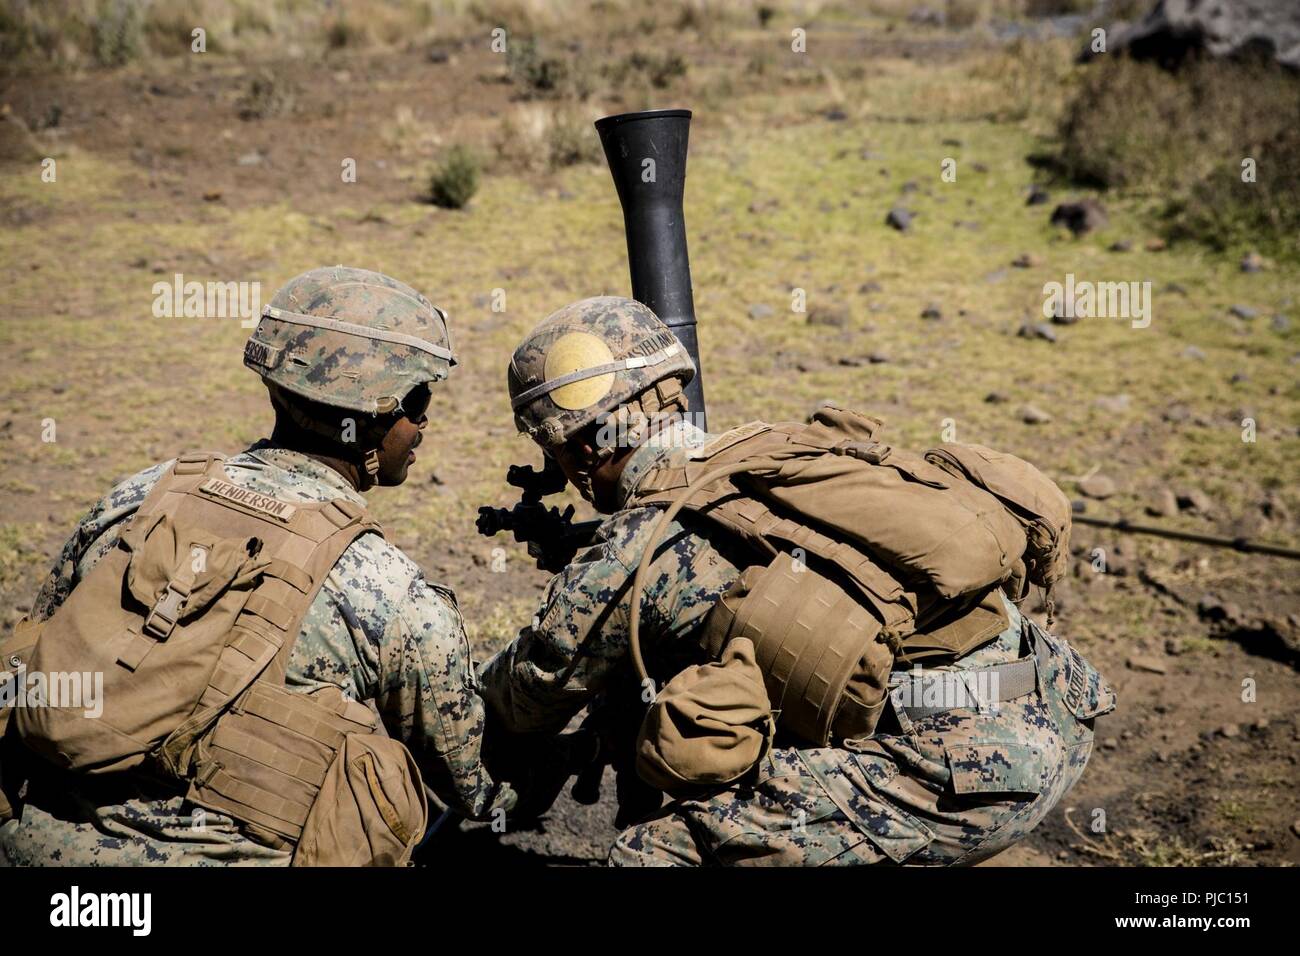 POHAKULOA TRAINING AREA, California (16. Juli 2018) der US-Marines mit Waffen Firma, 1.BATAILLON, 3 Marines, passen Sie ihre Mörser in der Vorbereitung für einen Brand Mission mit 81-mm-experimentellen, nicht-tödliche Indirektes Feuer Munition (Idfm) Runden während der Kernwaffen, die Veranstaltung, 16. Juli 2018 Pohakuloa Training Area, Hawaii. Die idfm ist ein integrierter Flash-bang-Personal runden für Personal in Reichweite zu unterdrücken, die Minimierung von Kollateralschäden. Stockfoto